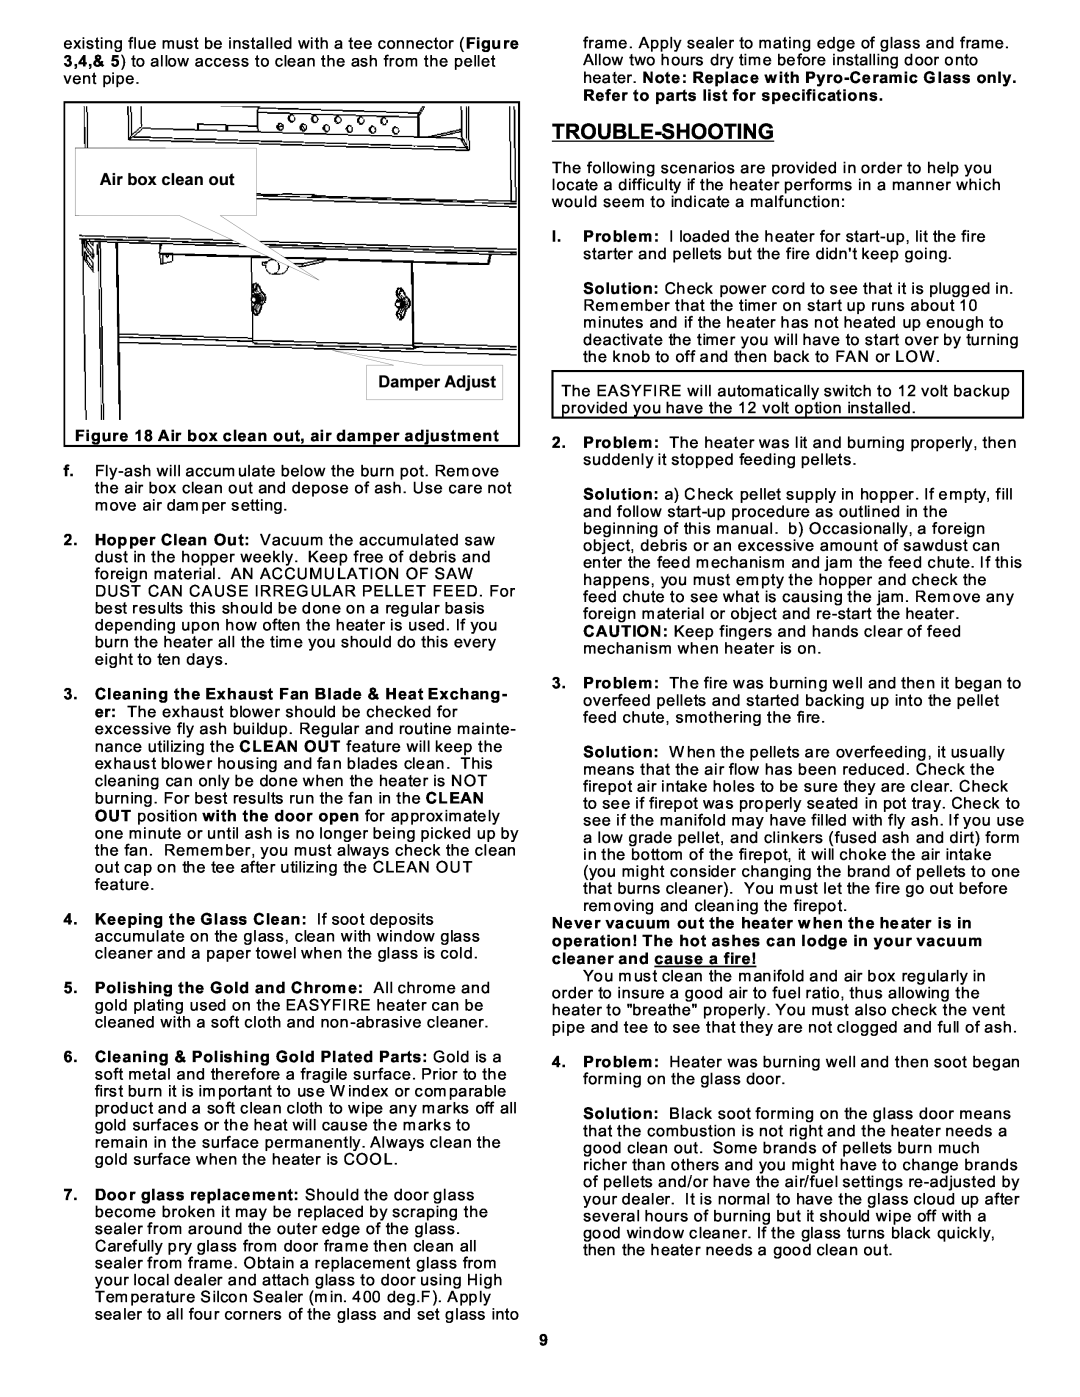 Sierra Products EF-3801B-AL owner manual Trouble-Shooting 